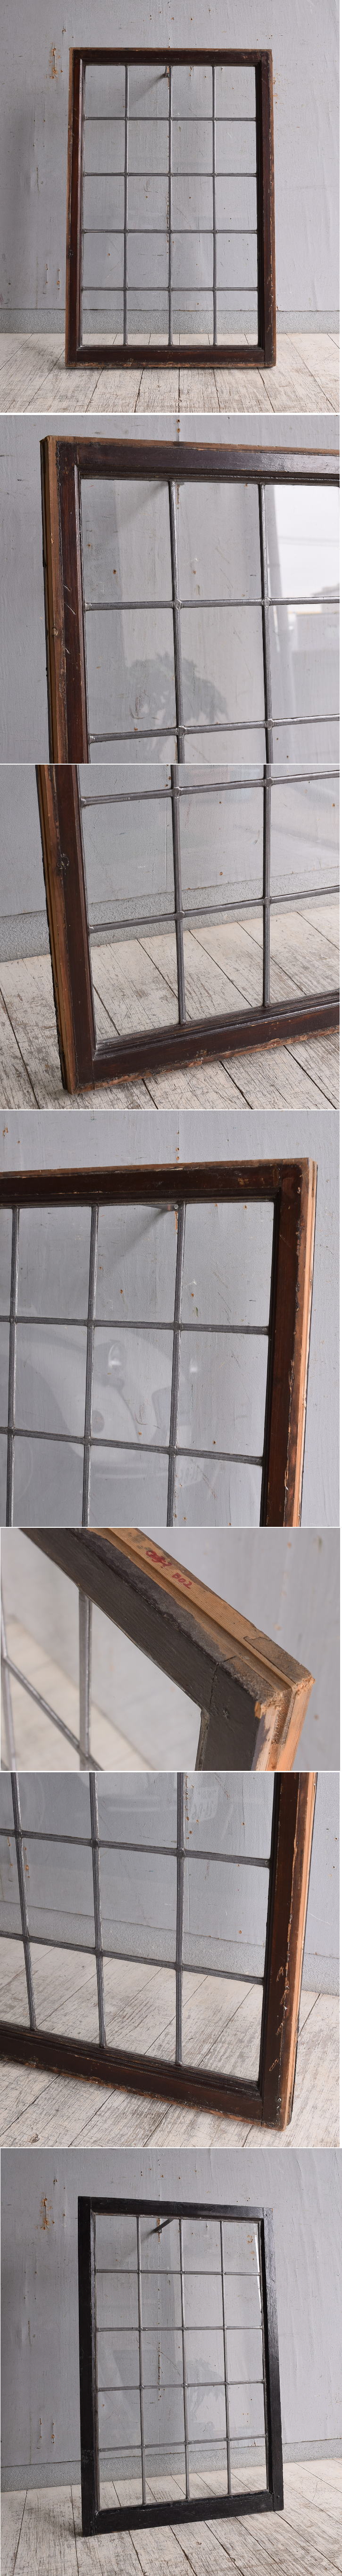 イギリス アンティーク 窓 無色透明 9887